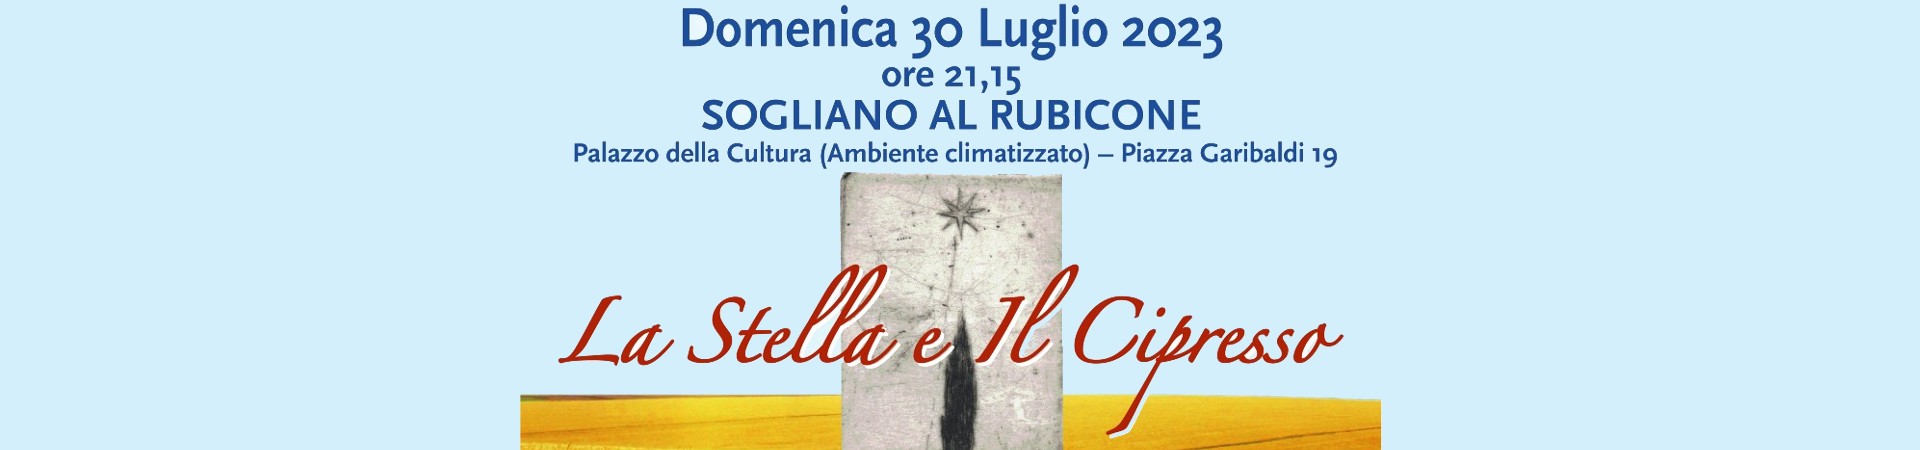 Visit-Sogliano-al-Rubicone-Eventi-stella-cipresso-2023_banner1920